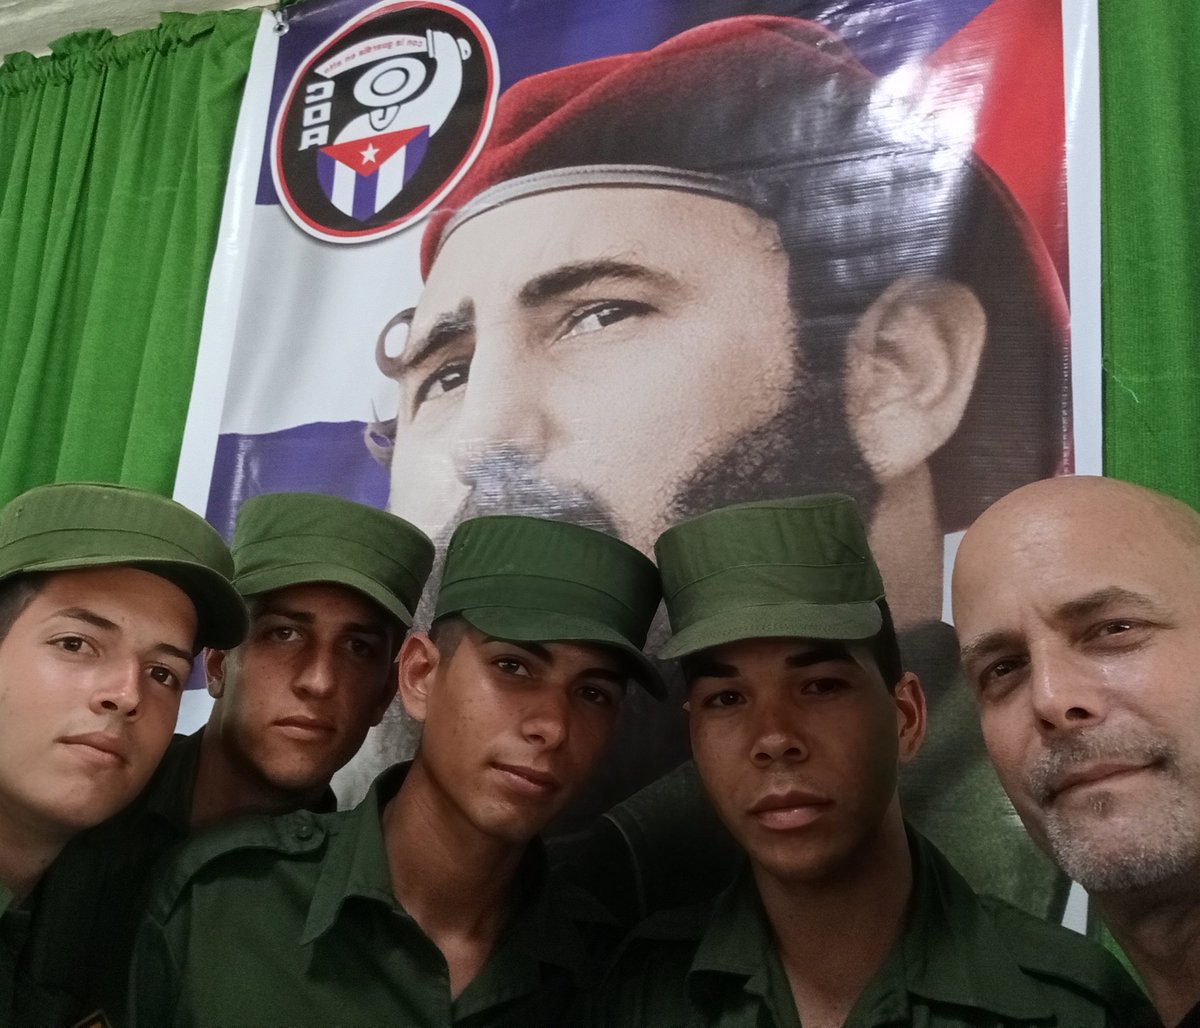 iOrgulloso de los jóvenes oficiales y soldados de la Patria! #Cuba #CDRCuba #JuntosPorVillaClara #TodosSomosCederistas